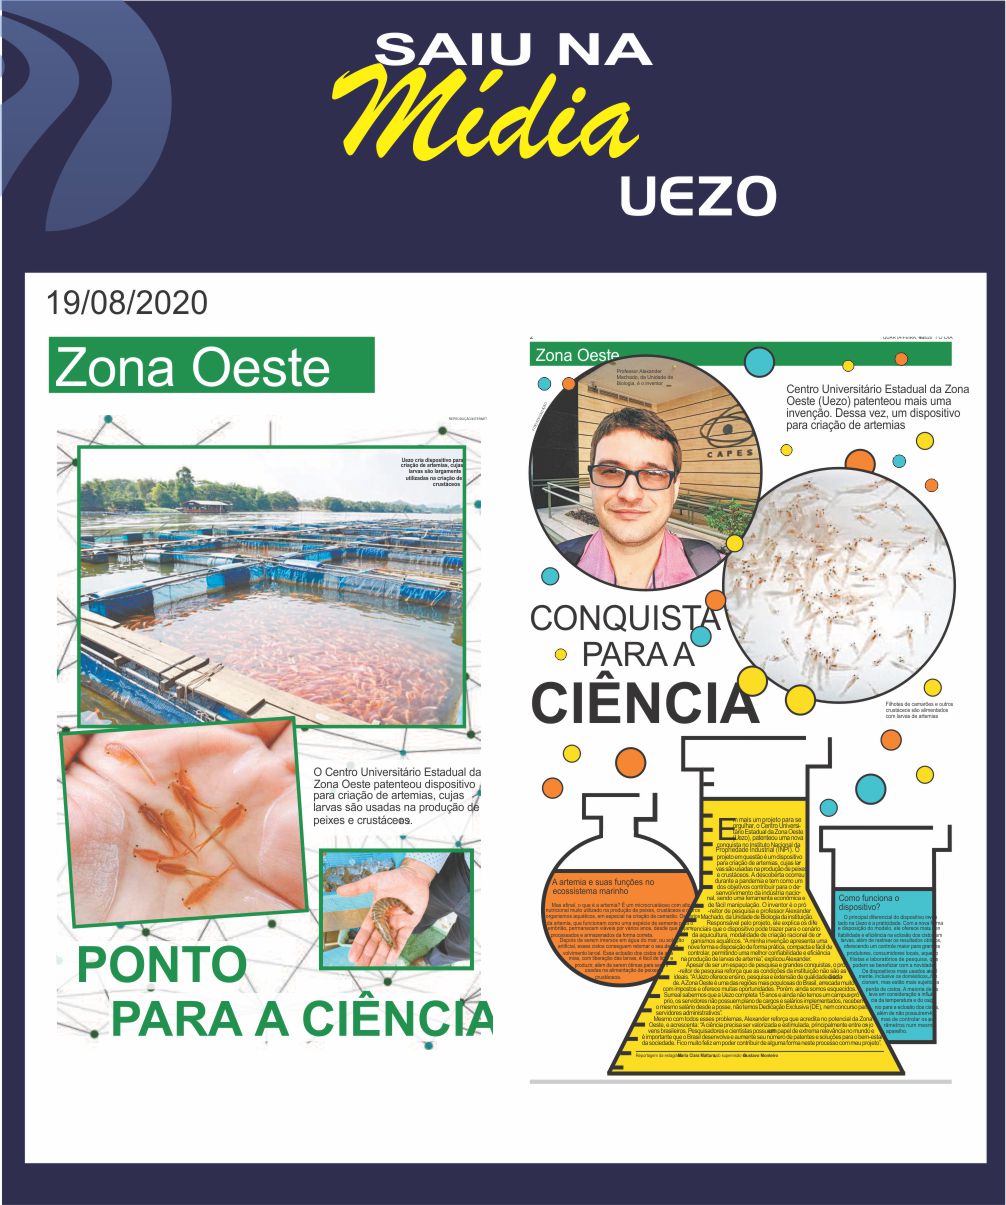 UEZO patenteou dispositivo para criação de artemias